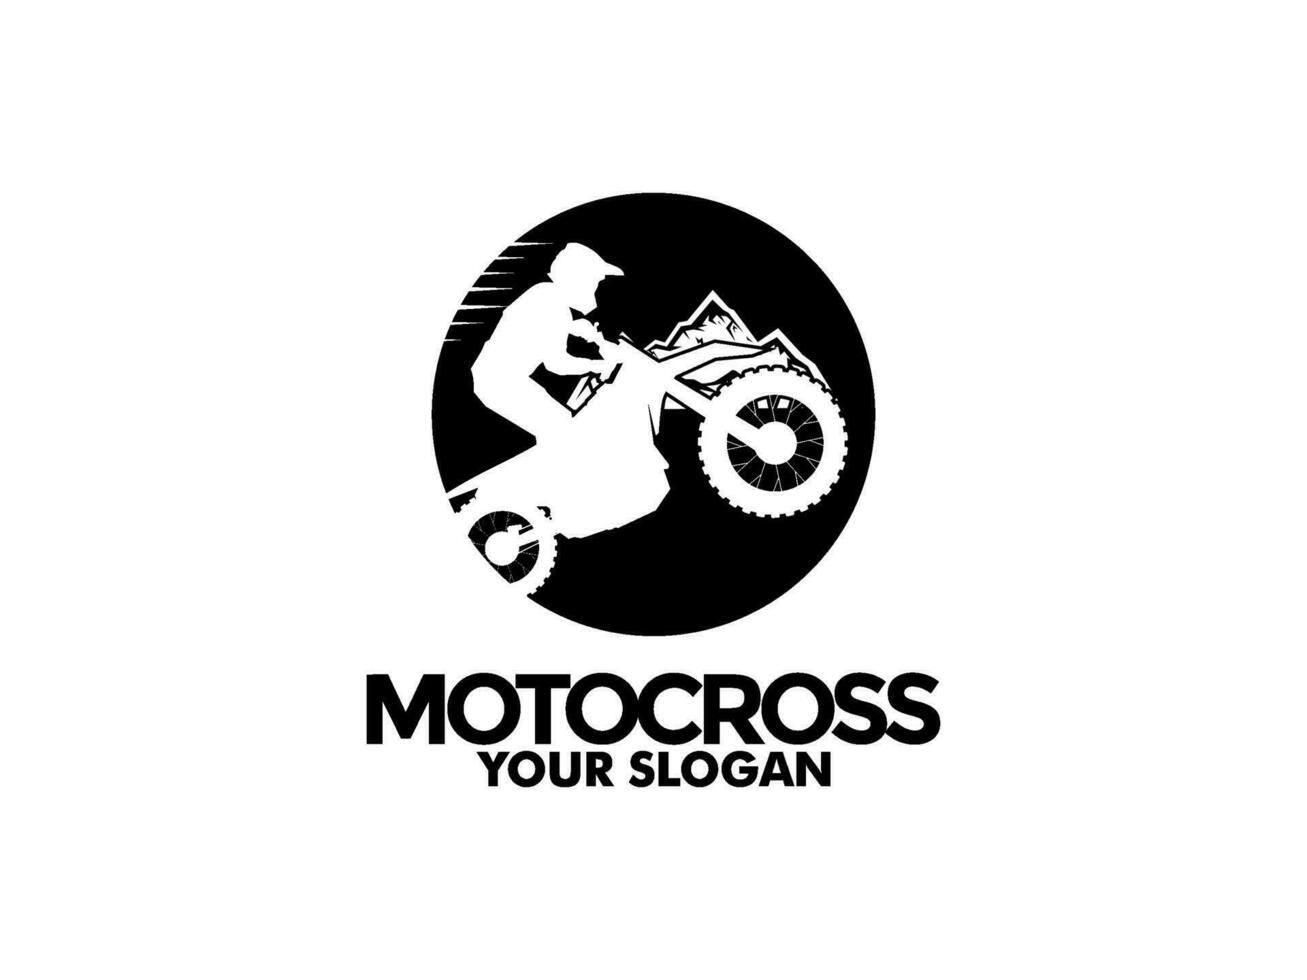 motocross con un jinete en un moto, motocross logo vector ilustración